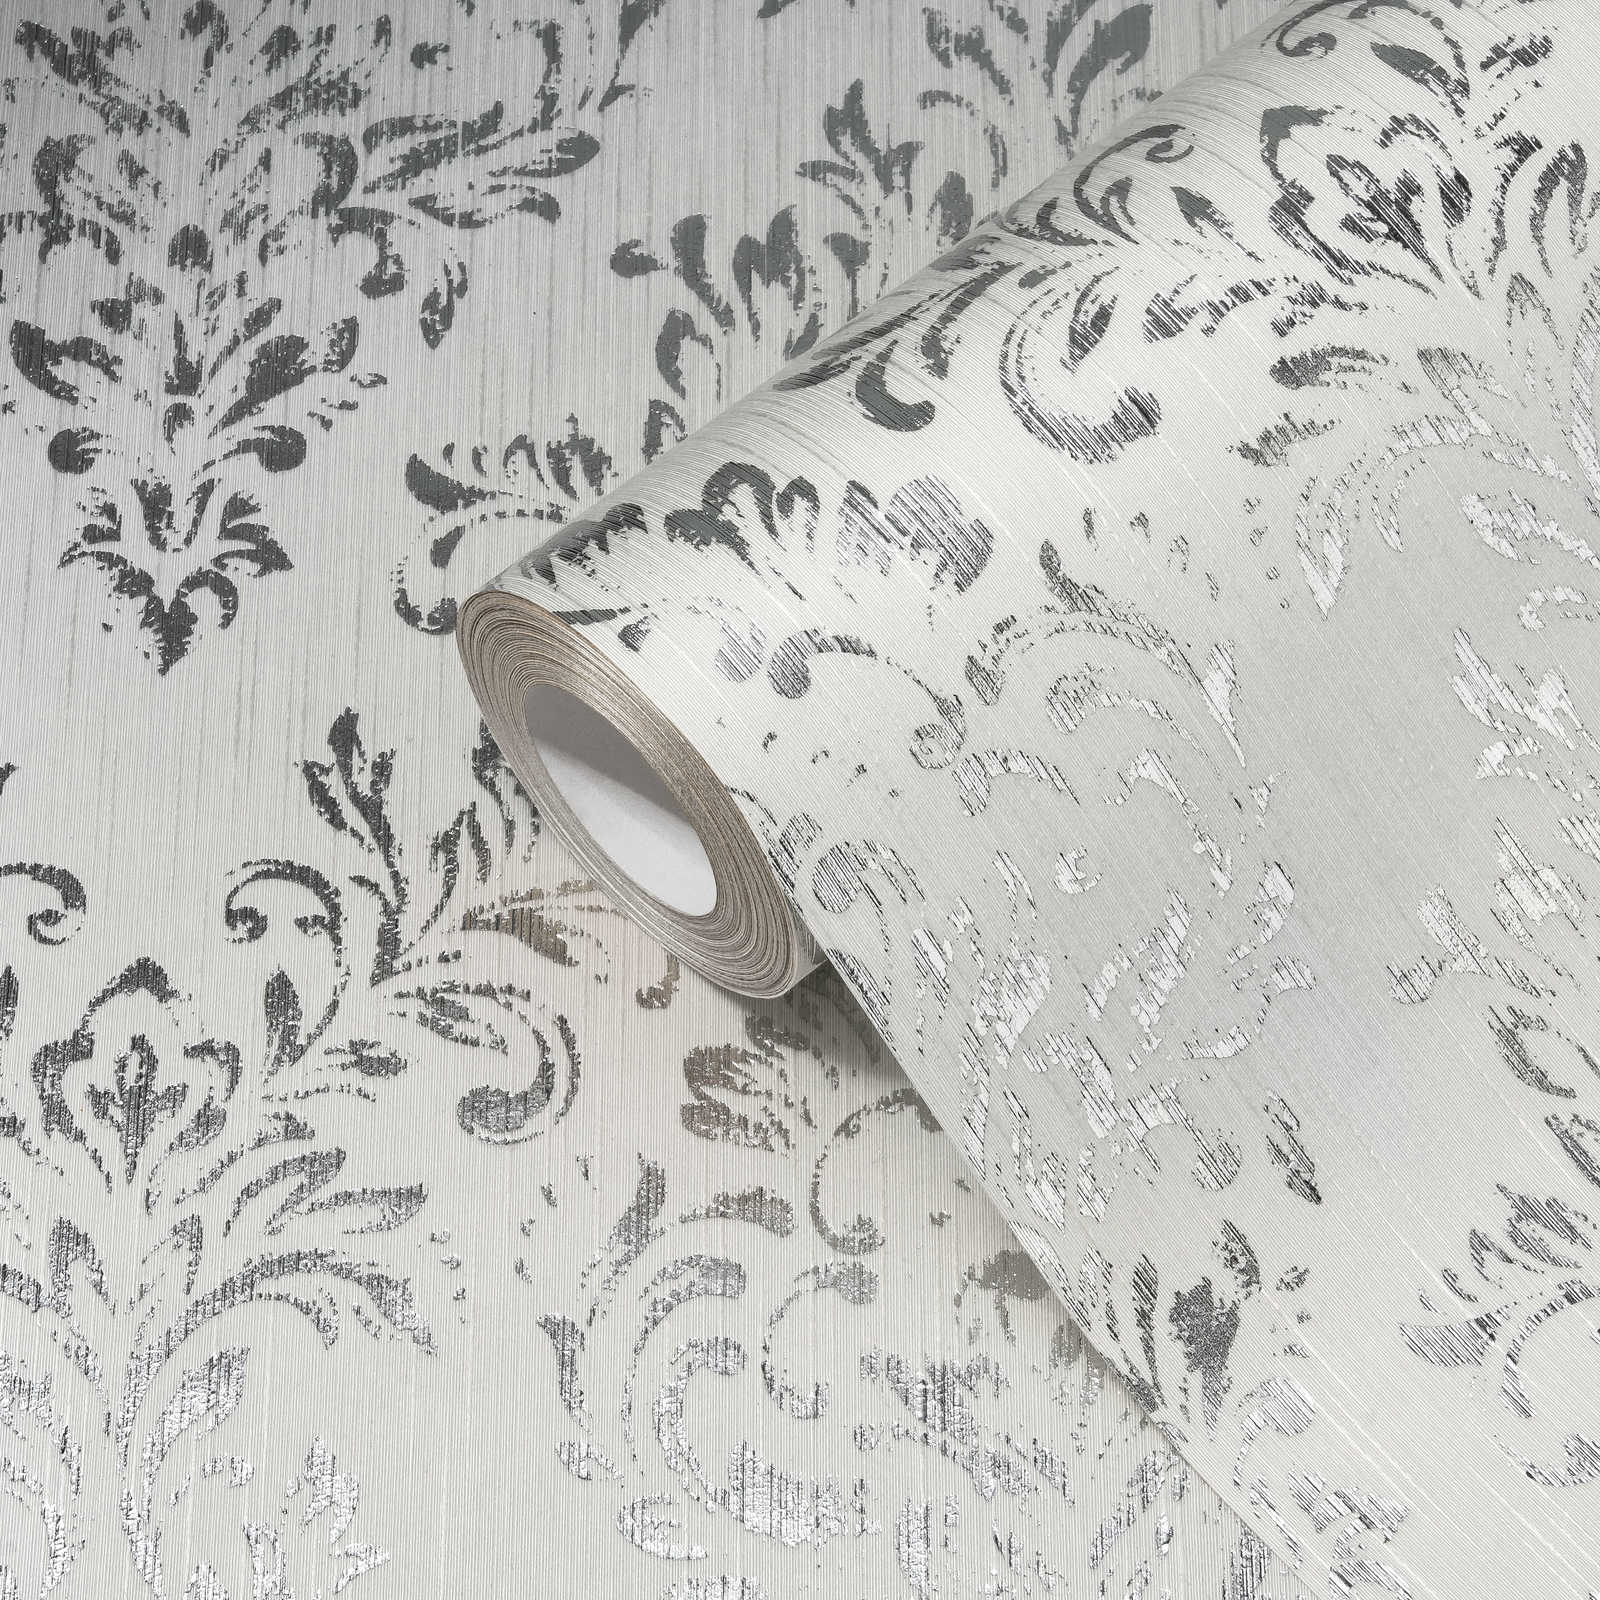             Sierbehang in bloemmotief met glittereffect - zilver, wit
        